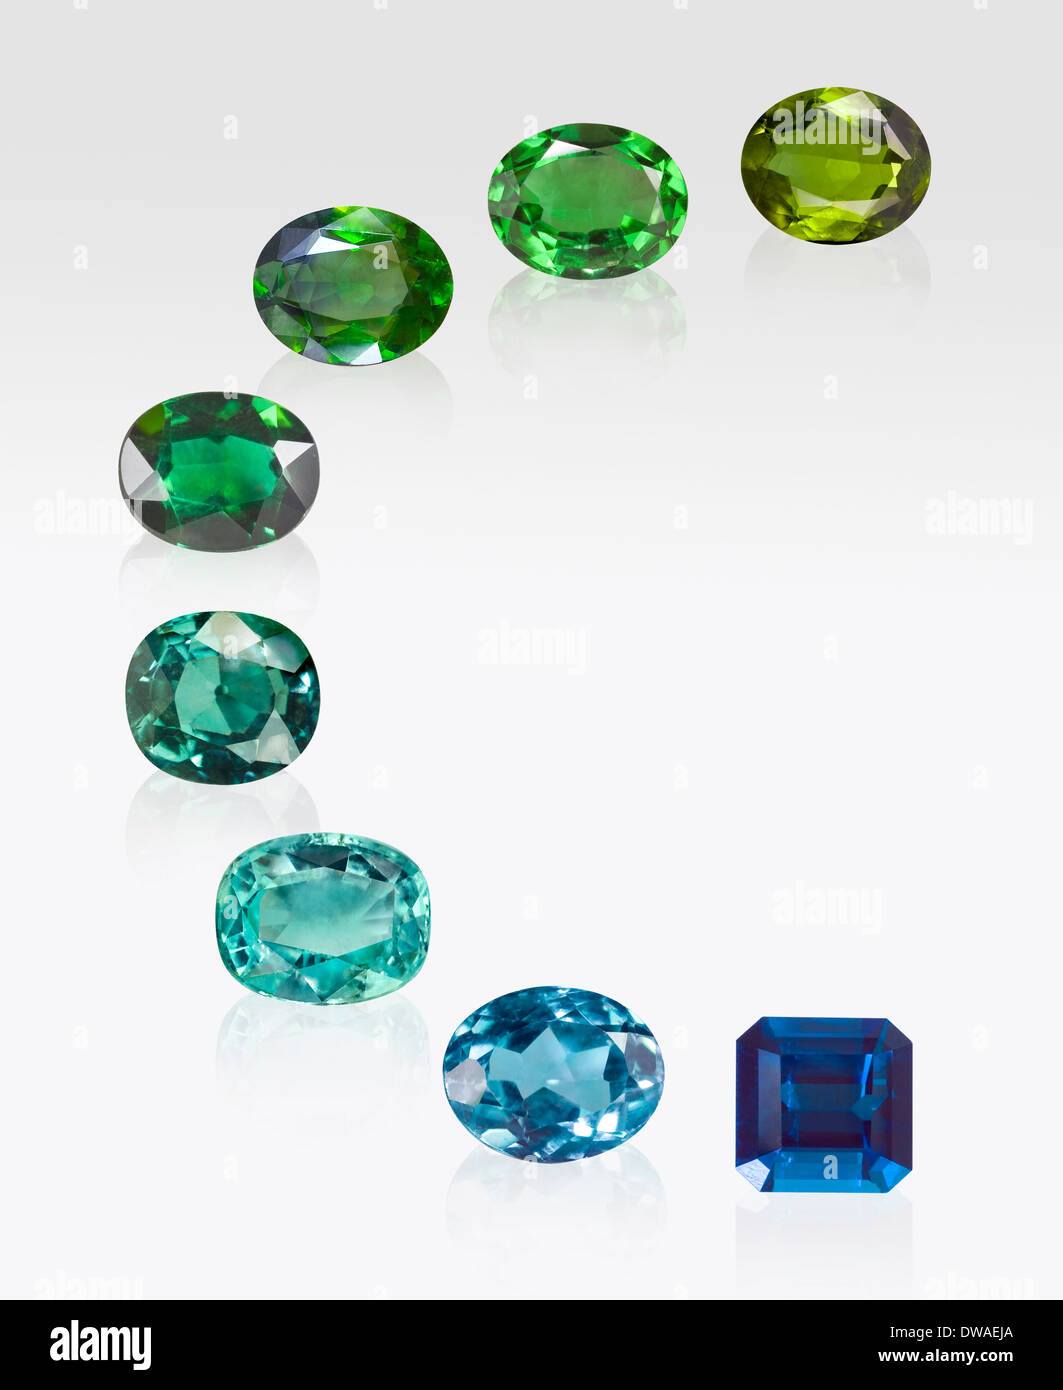 Tourmaline gemstones on white background Stock Photo